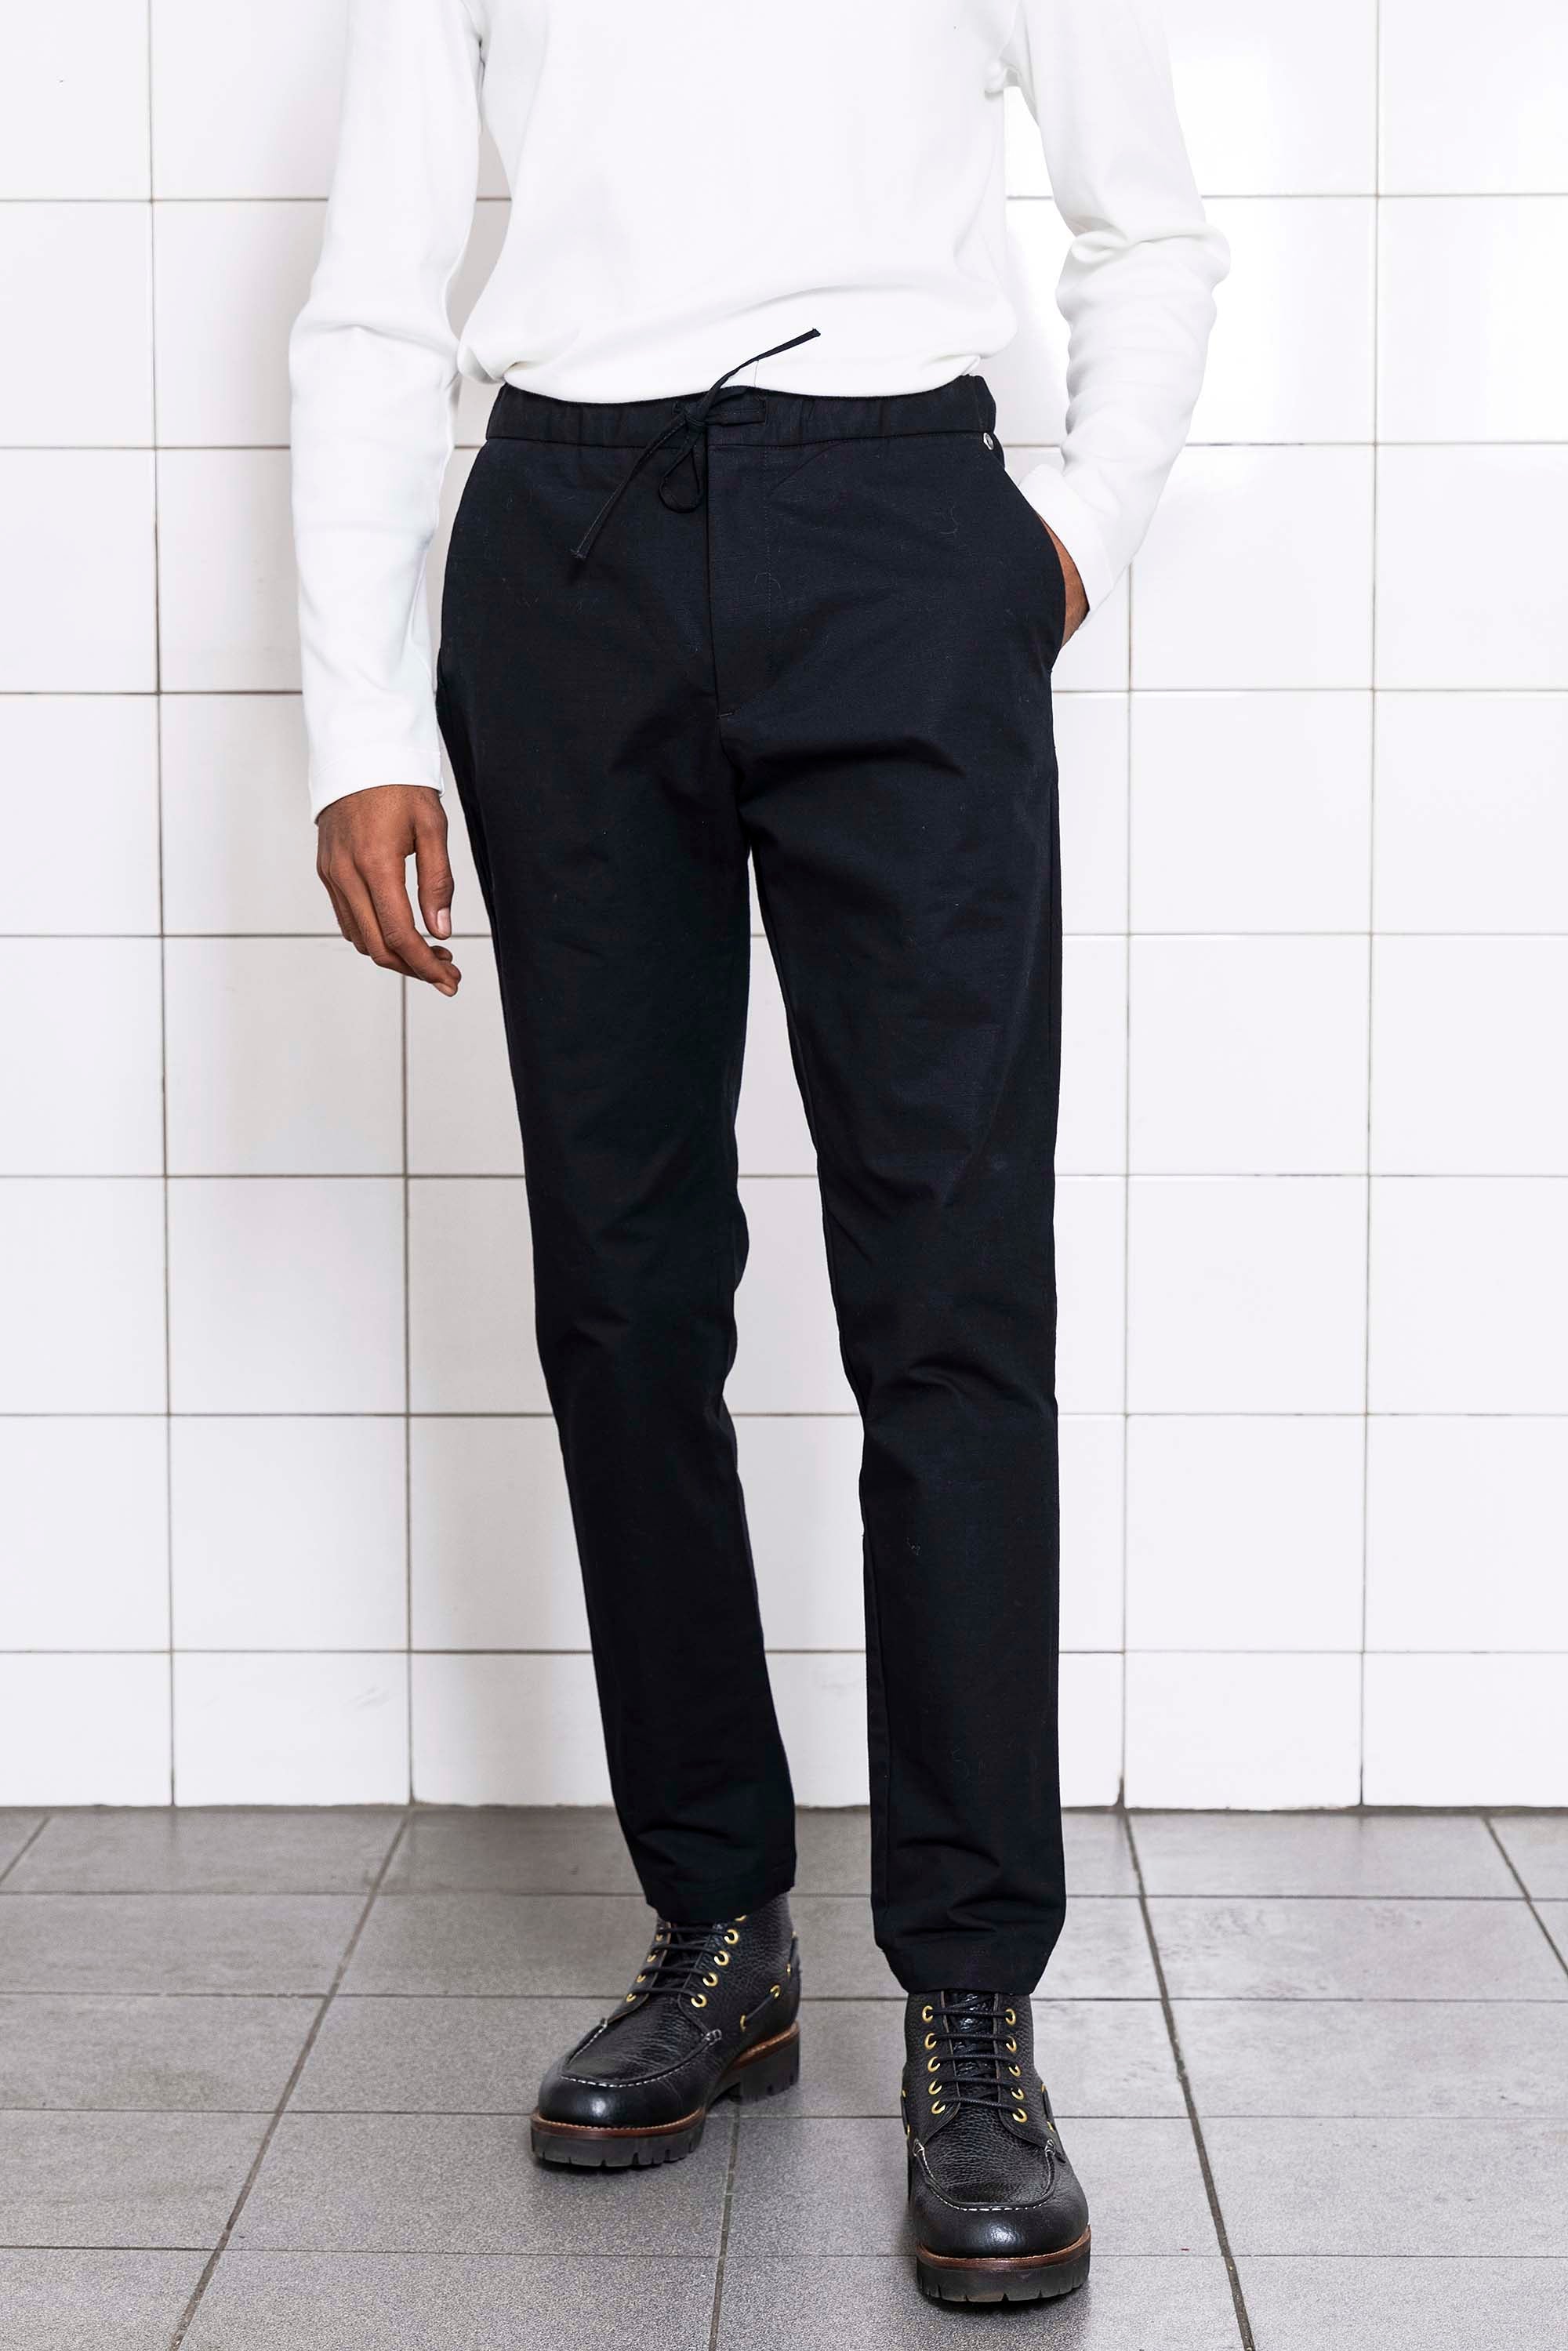 Pantalon Parejo Noir pantalons élégants pour hommes, déclinés dans une large gamme de motifs et de coupes